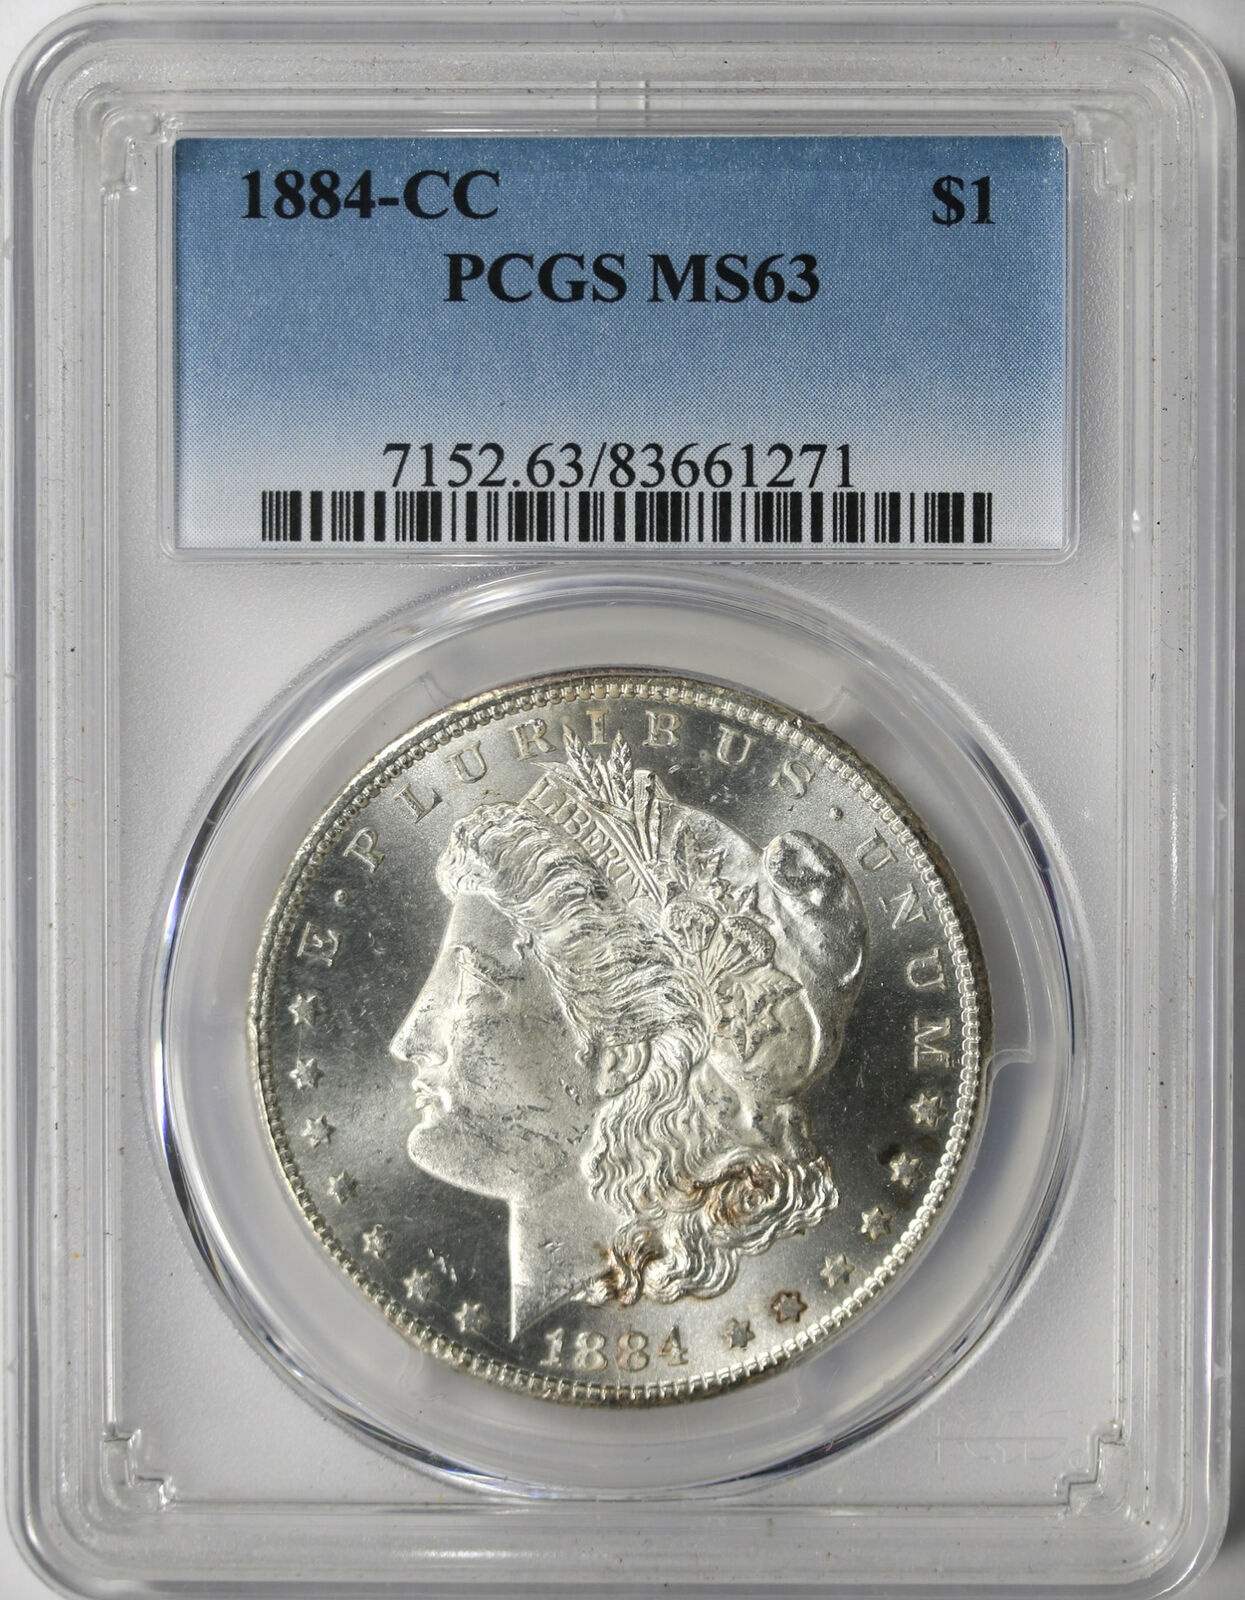 登場大人気アイテム アンティークコイン コイン 金貨 銀貨 送料無料 1884-CC $1 Morgan Dollar PCGS